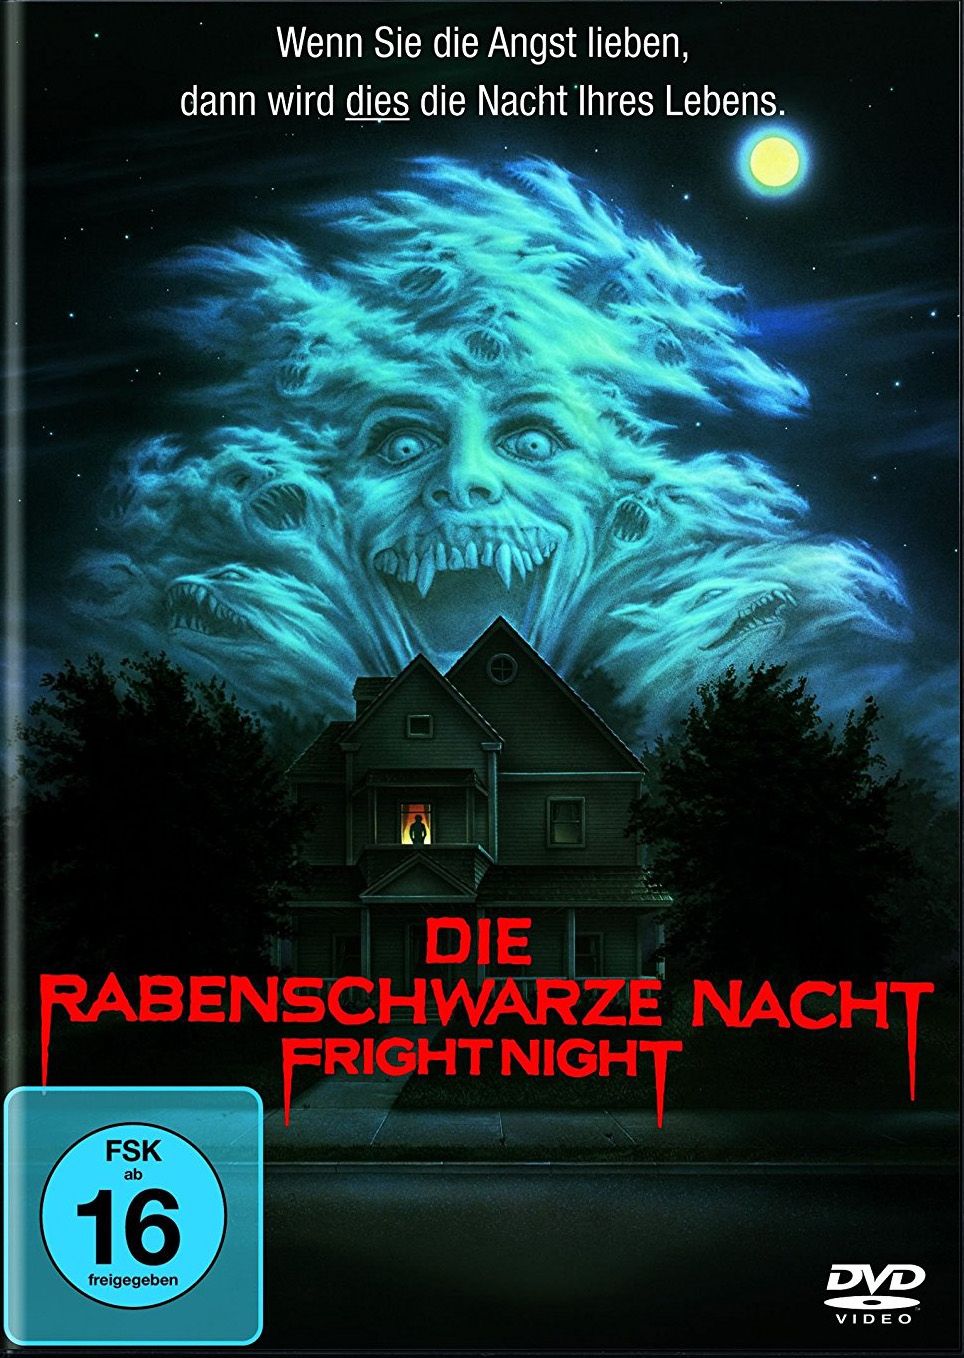 Fright Night - Die rabenschwarze Nacht (Uncut)